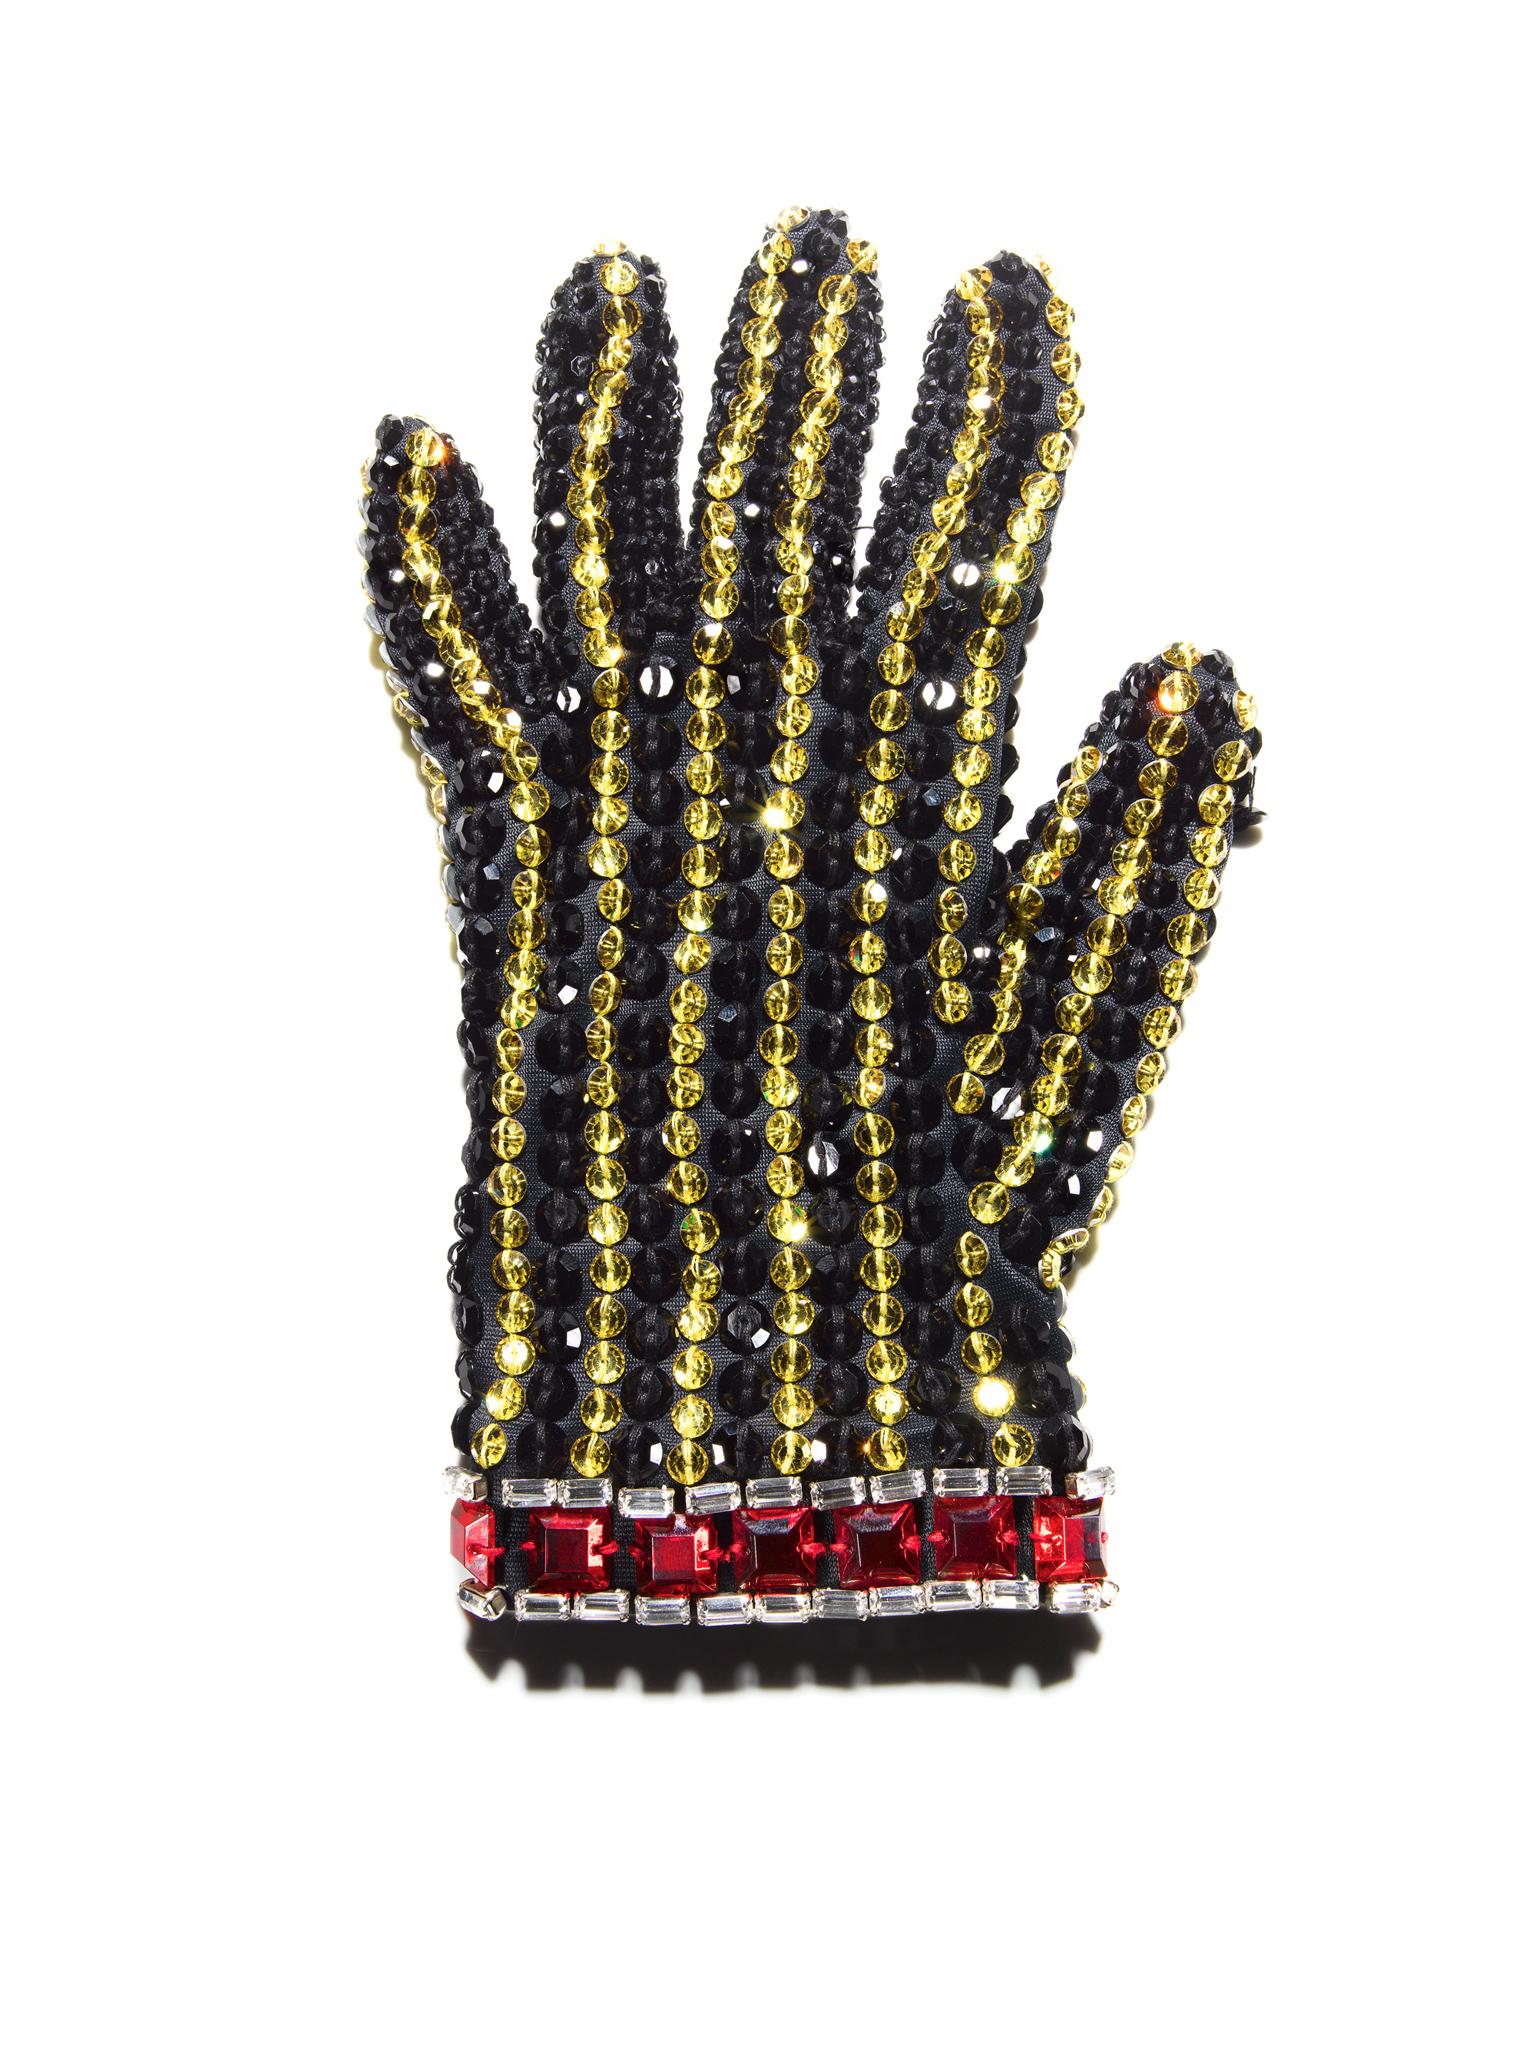 Tom Schierlitz Color Photograph - Black Glove ( Michael Jackson ) 40" x 30"